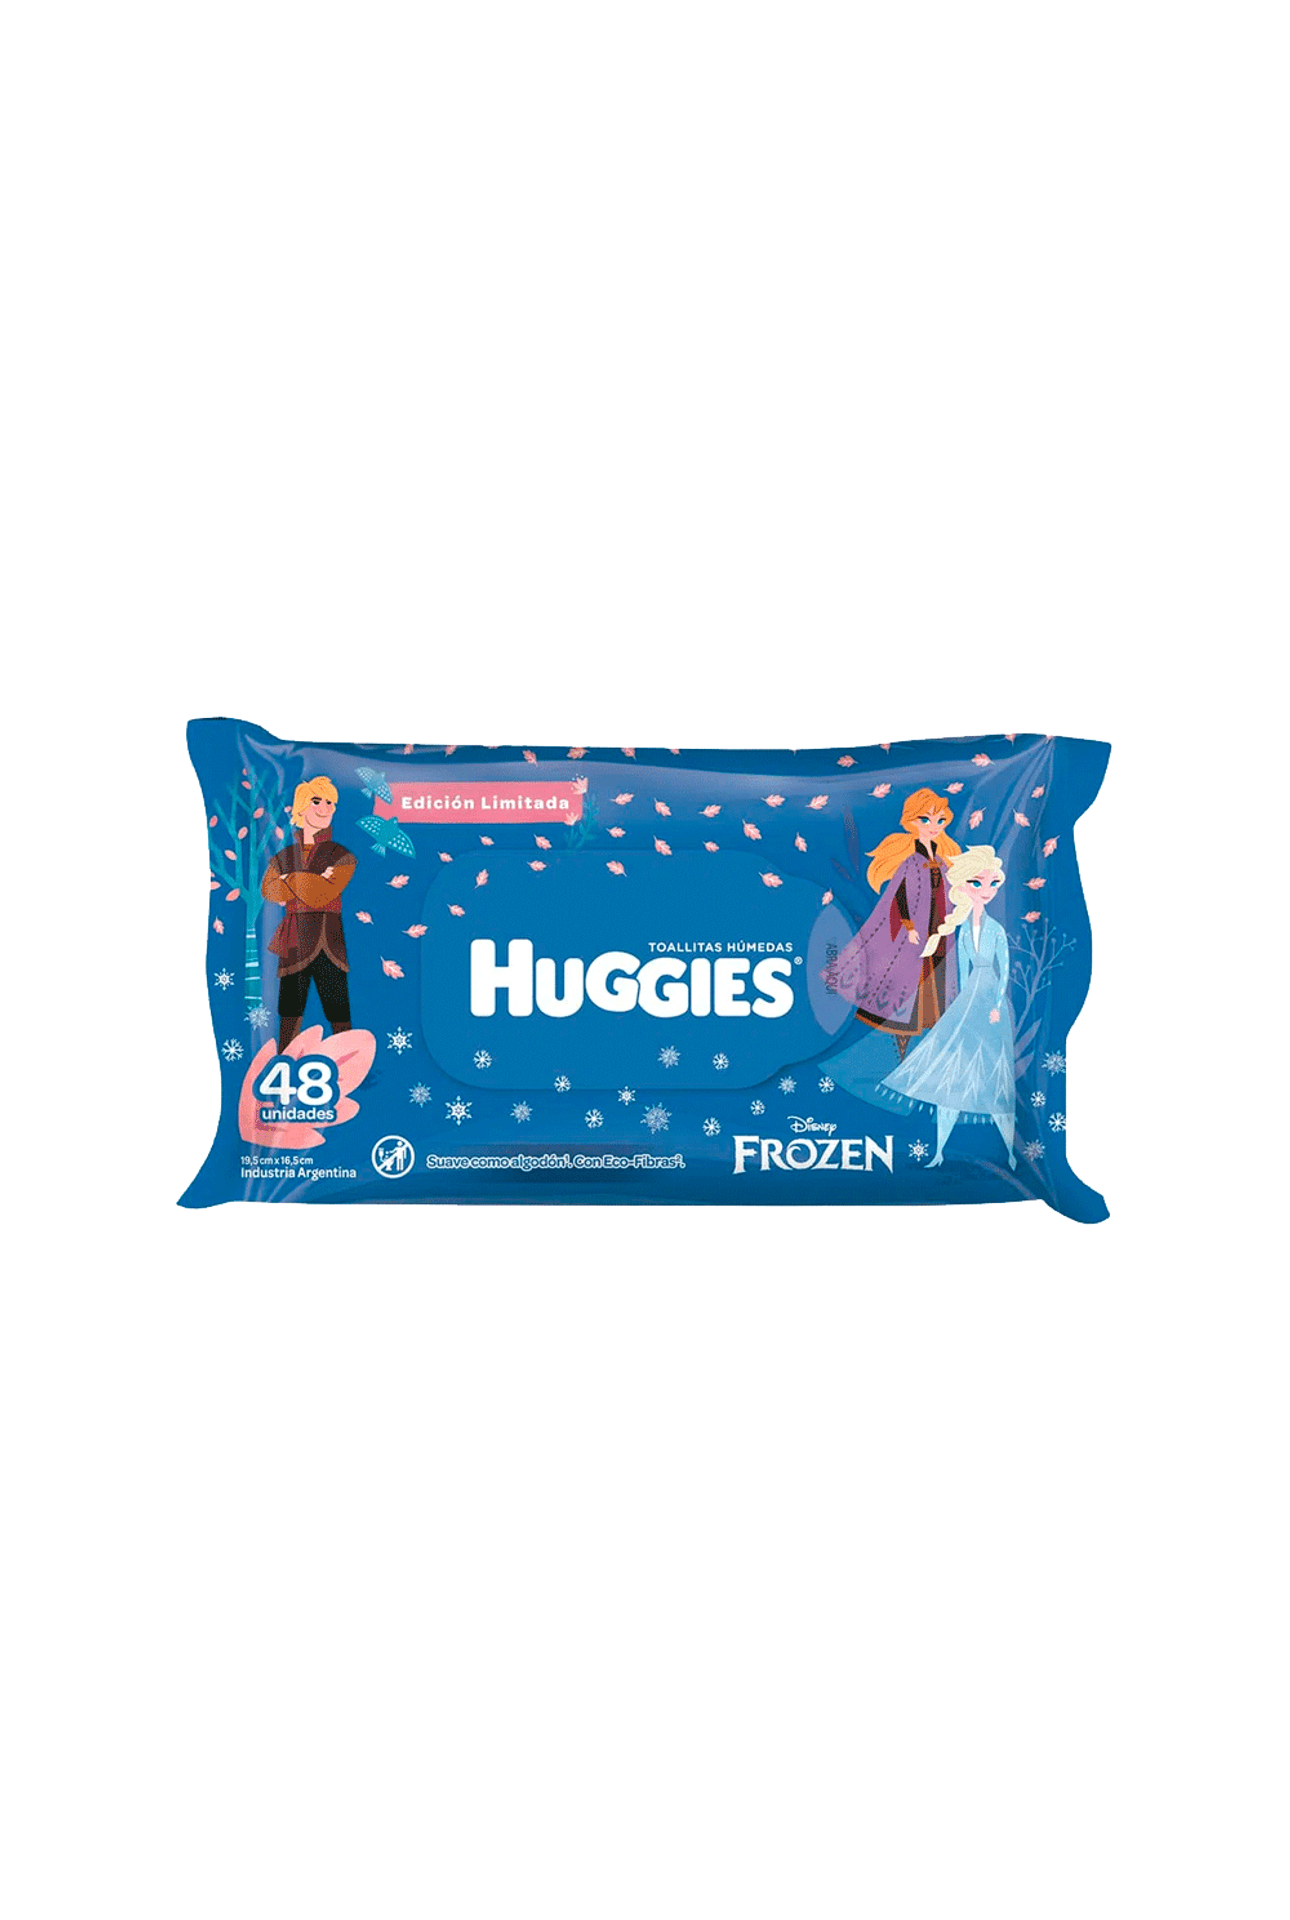 Huggies-Toallitas-Humedas-Huggies-Frozen-x-48-unid-7794626012594_img1